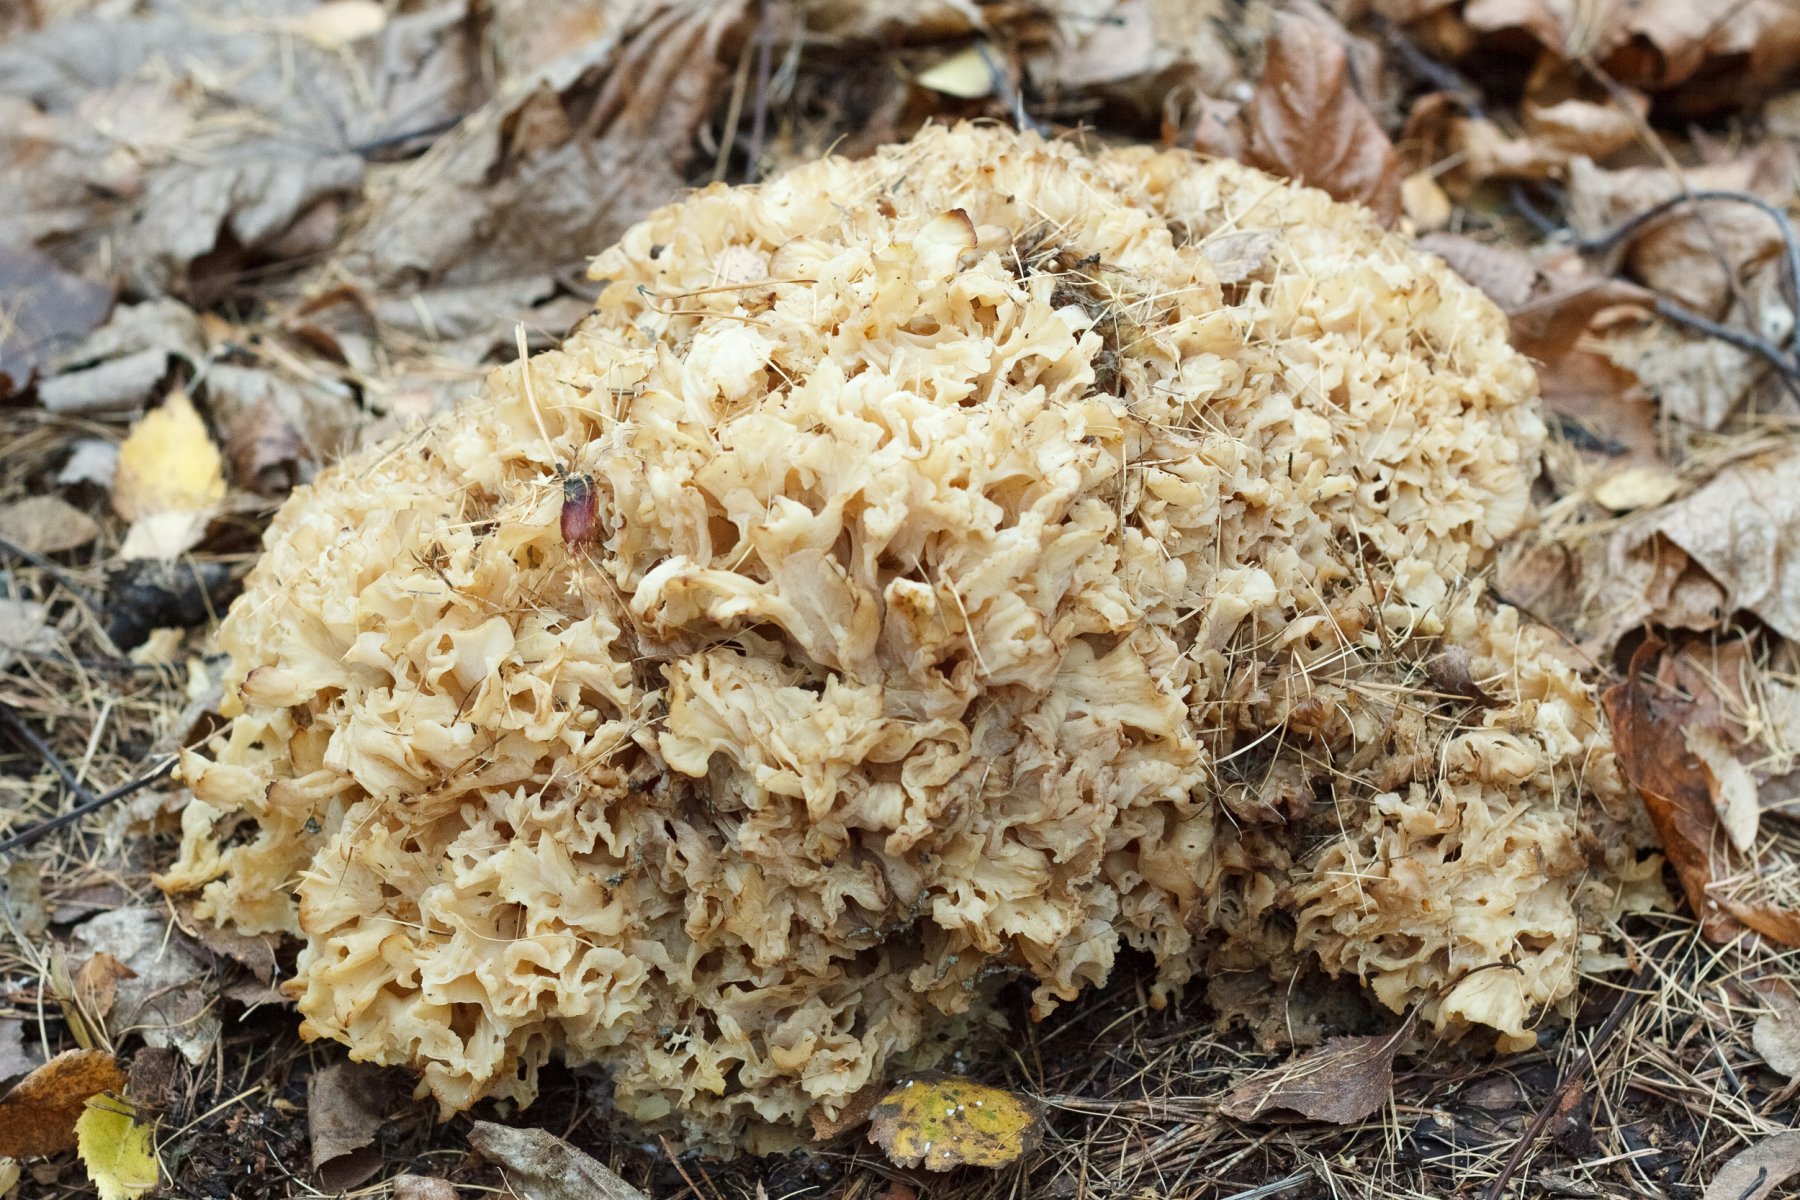  В Кузьминках нашли гигантский редкий гриб-паразит «грибное счастье»